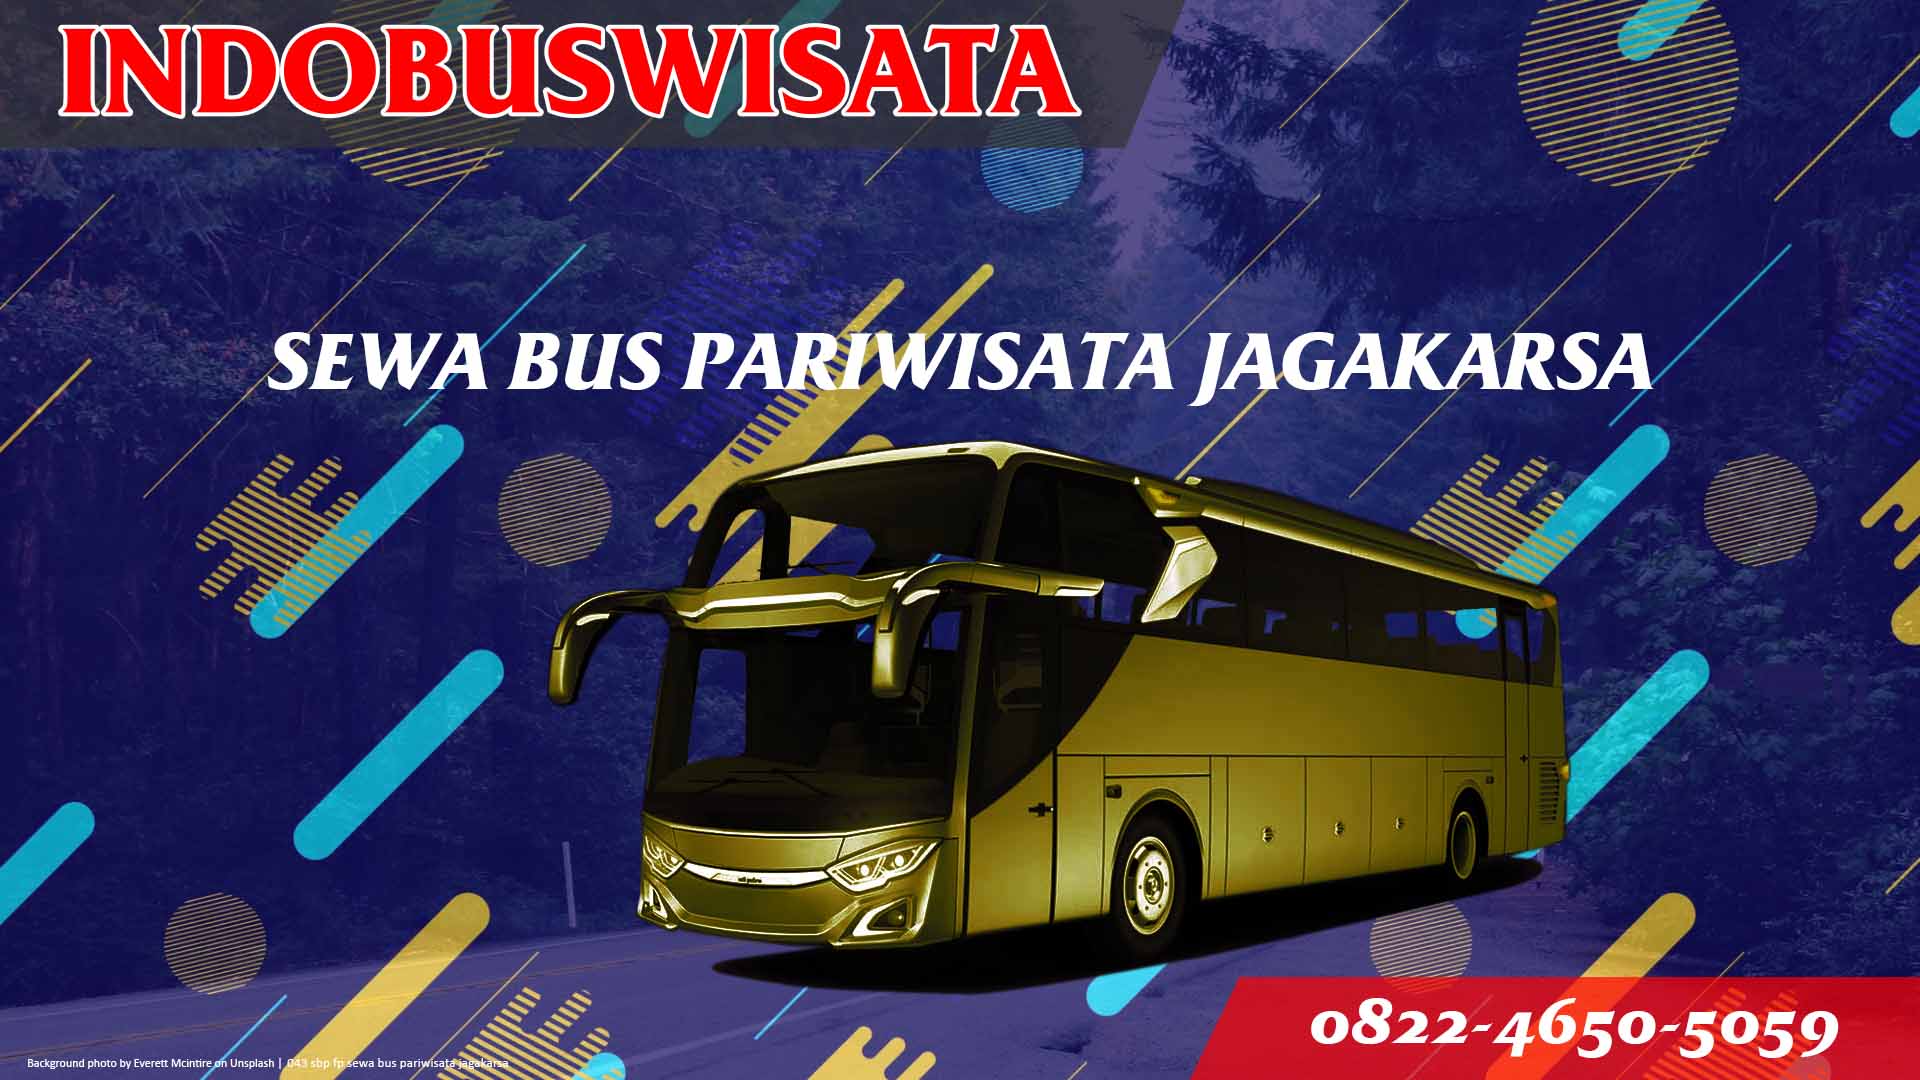 043 Sbp Fp Sewa Bus Pariwisata Jagakarsa Indobuswisata